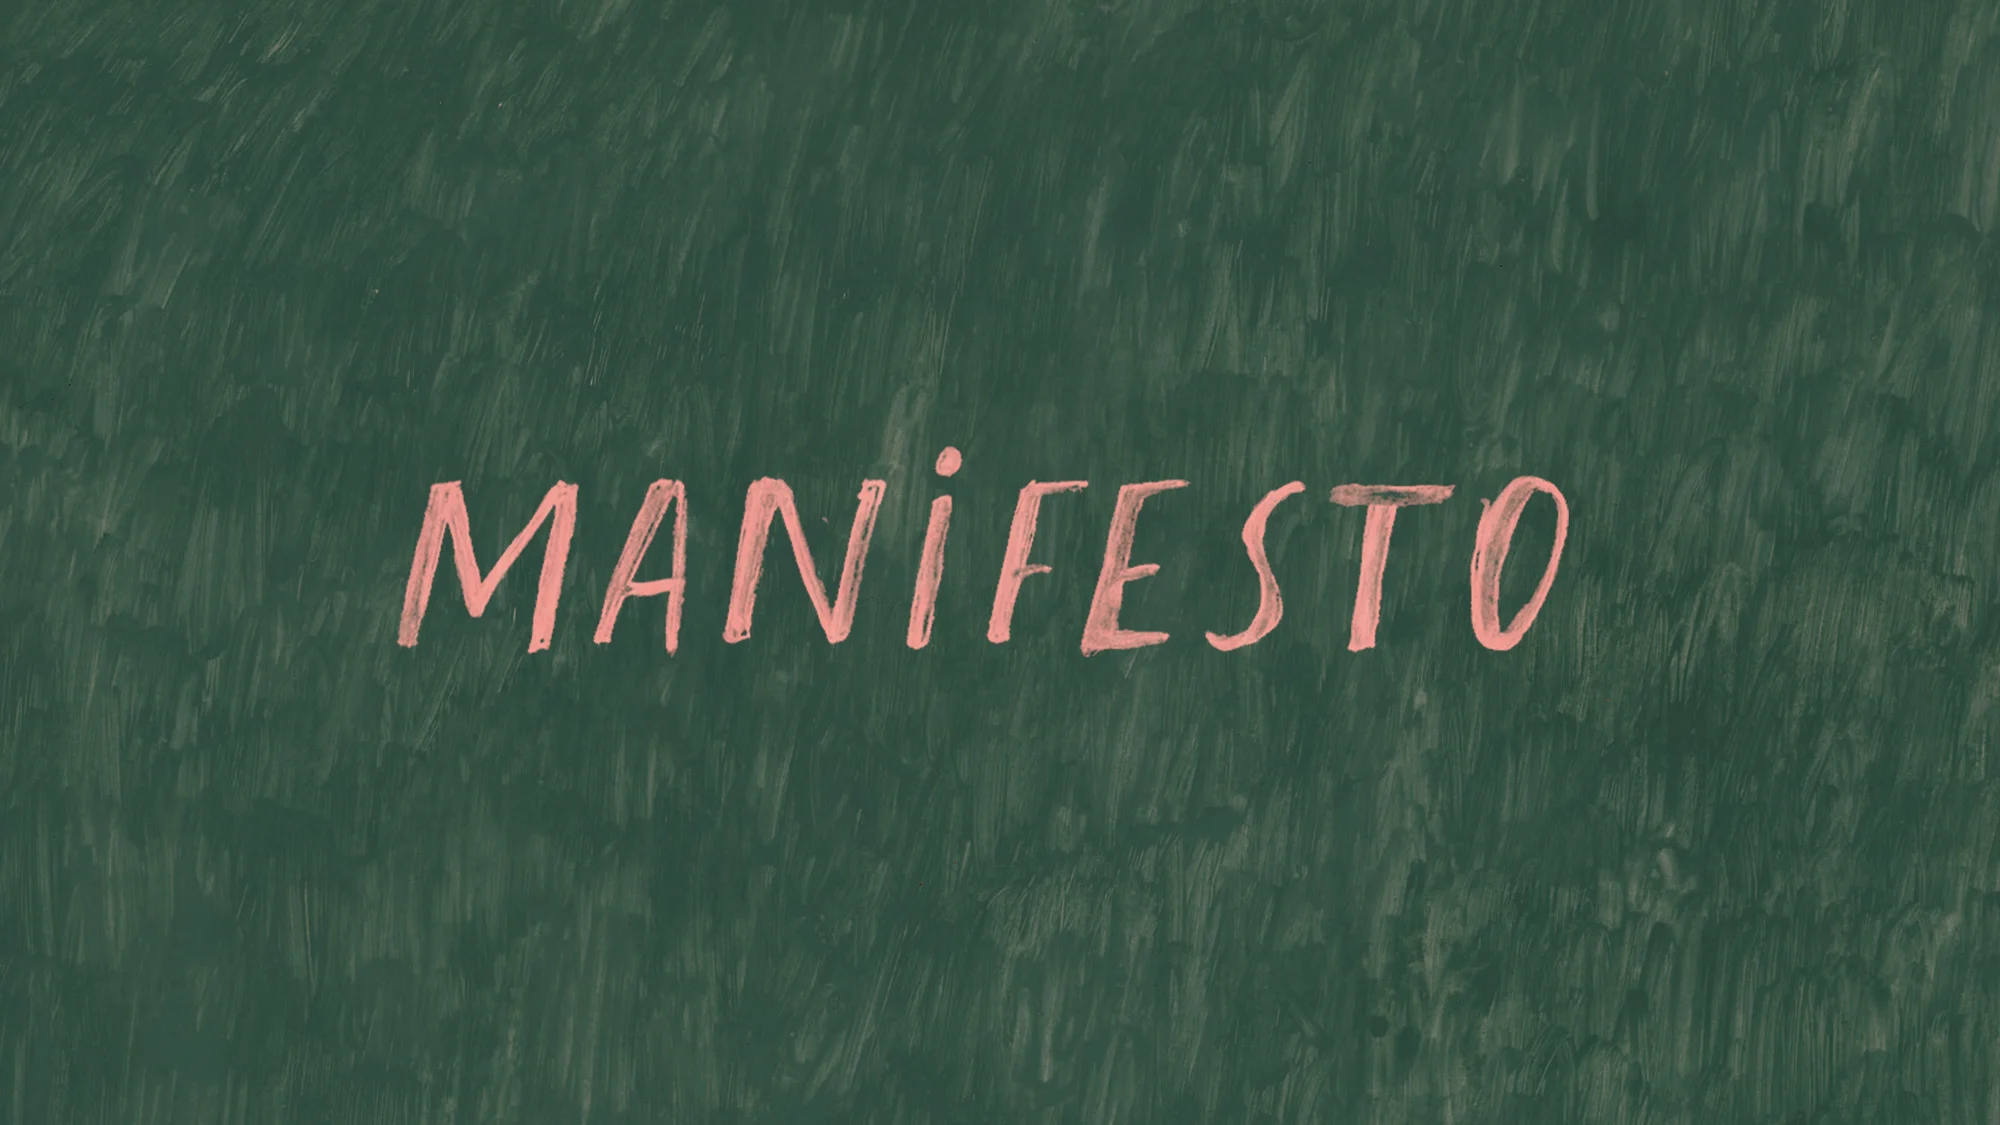 A Manifesto by Natasha Khan